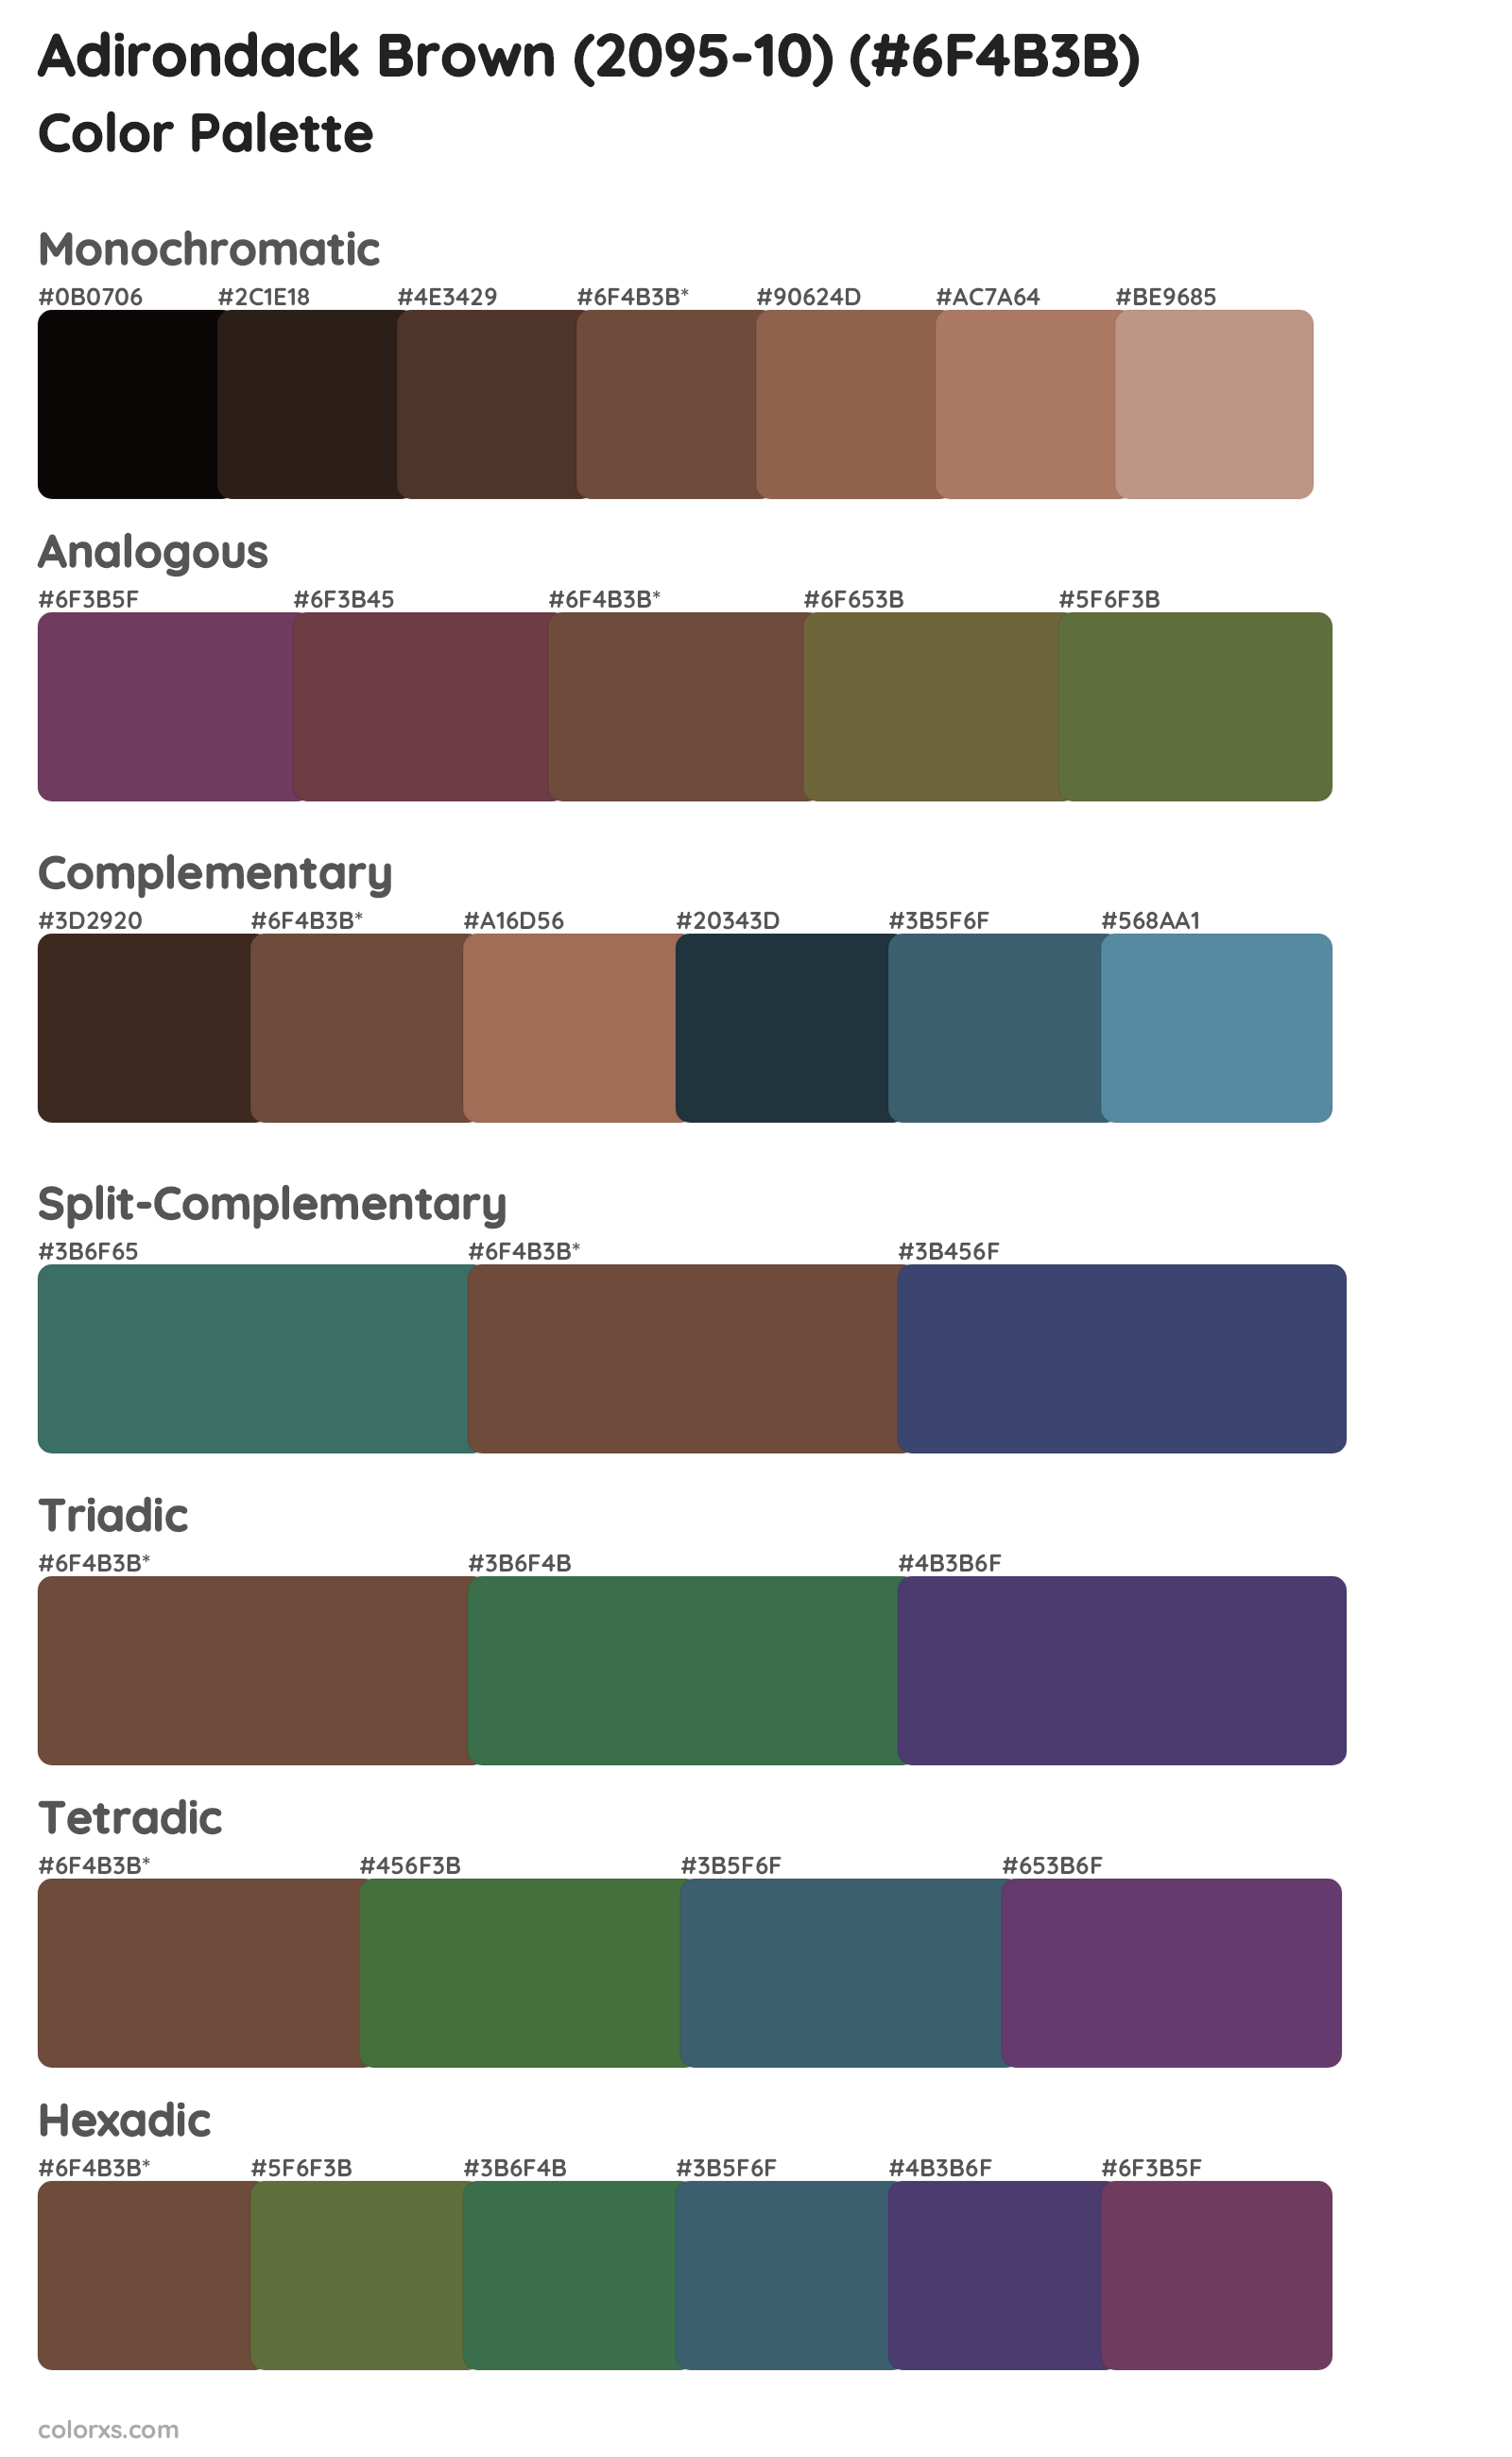 Adirondack Brown (2095-10) Color Scheme Palettes